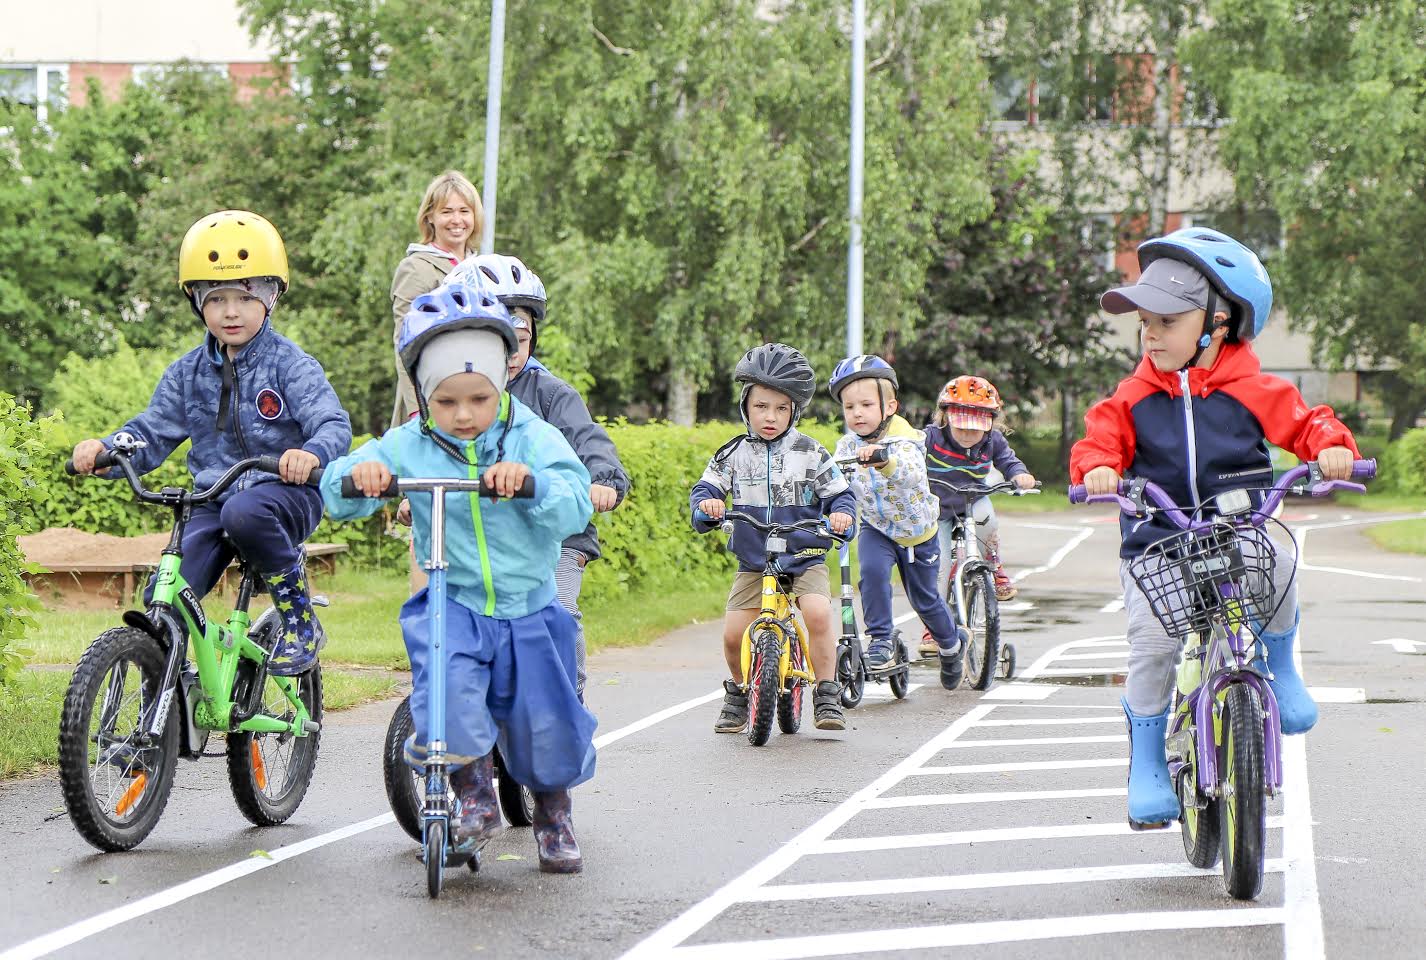 Neljapäeval käis lasteaia liiklusväljakul esimene tutvumine. Lepatriinu ja Jänku-Jussi rühma lapsed alles lihvisid oma liiklejaoskusi. Fotod: AIGAR NAGEL